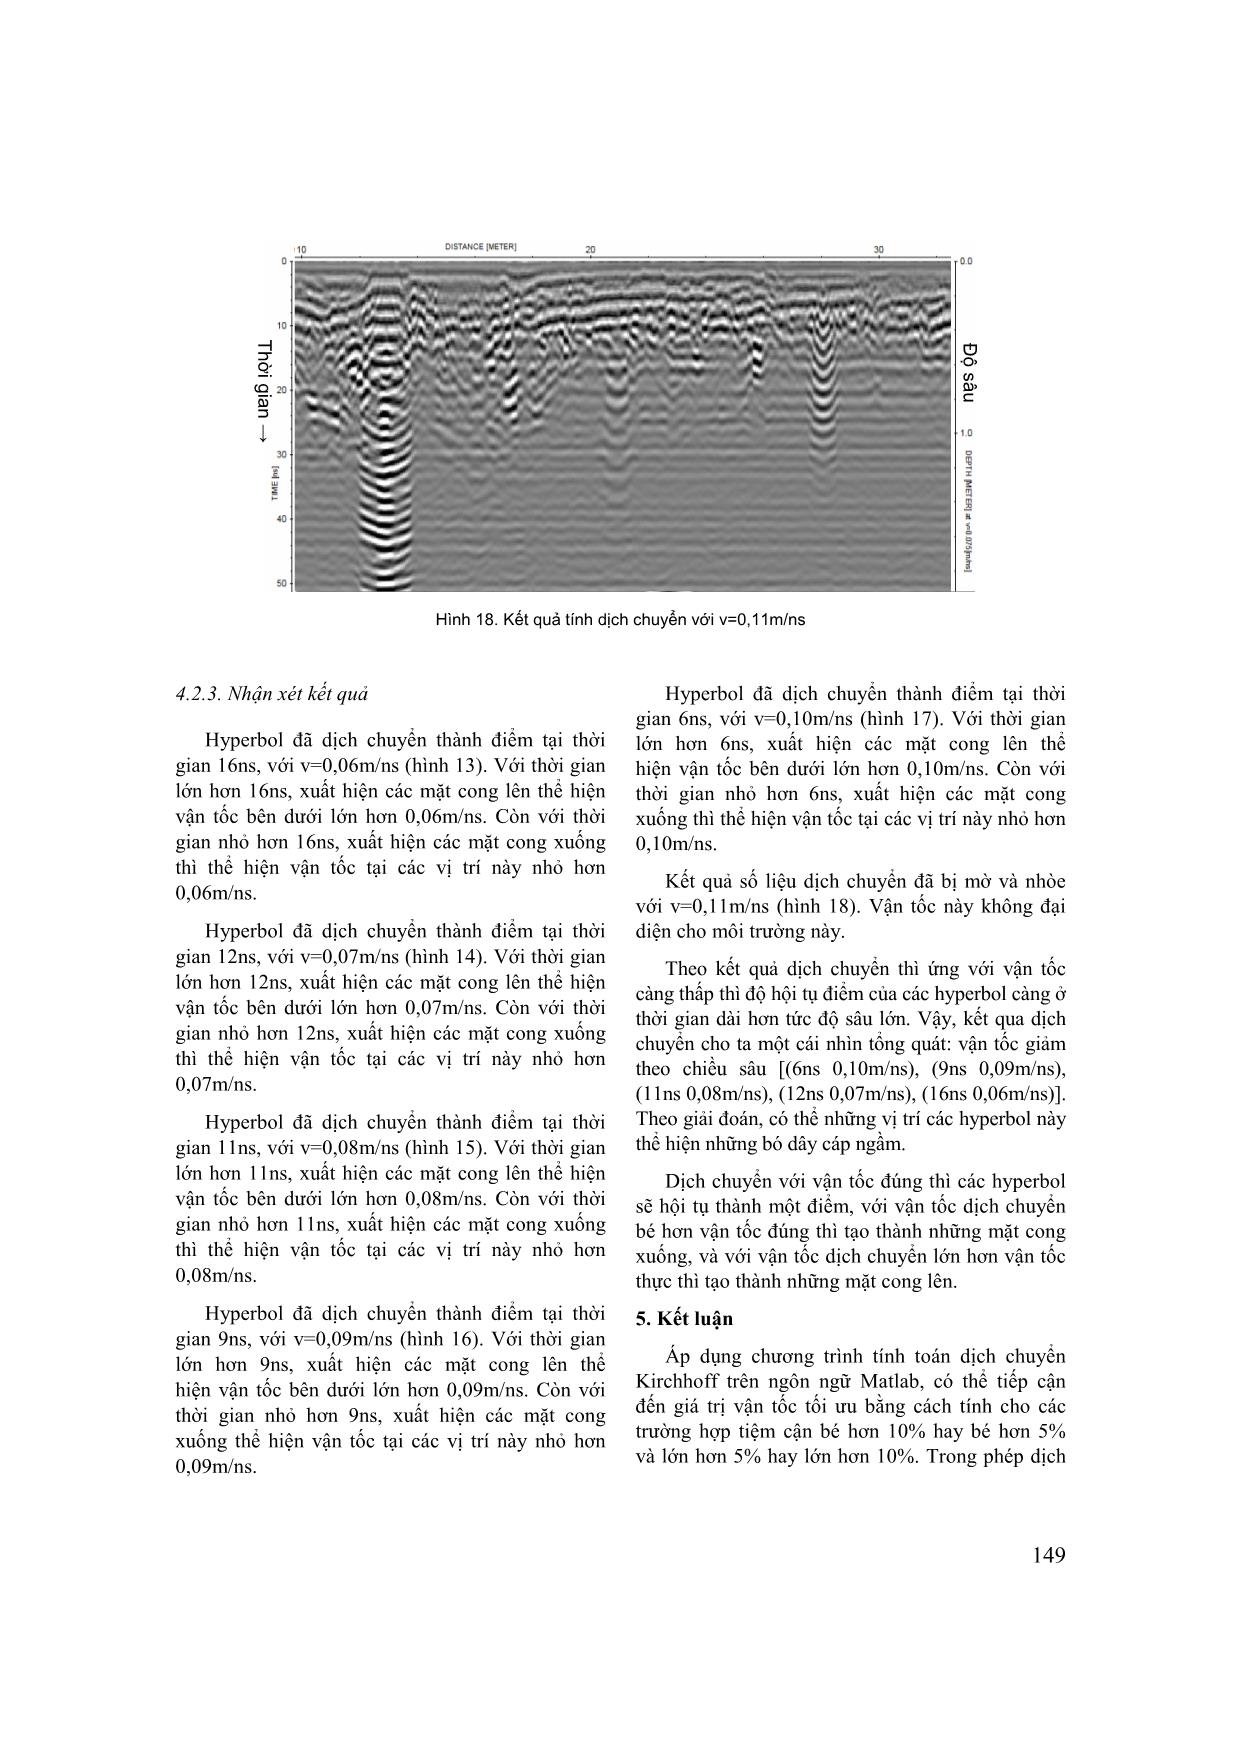 Nghiên cứu dịch chuyển kirchhoff để xác định mô hình vận tốc trong phương pháp điện từ tần số cao trang 8